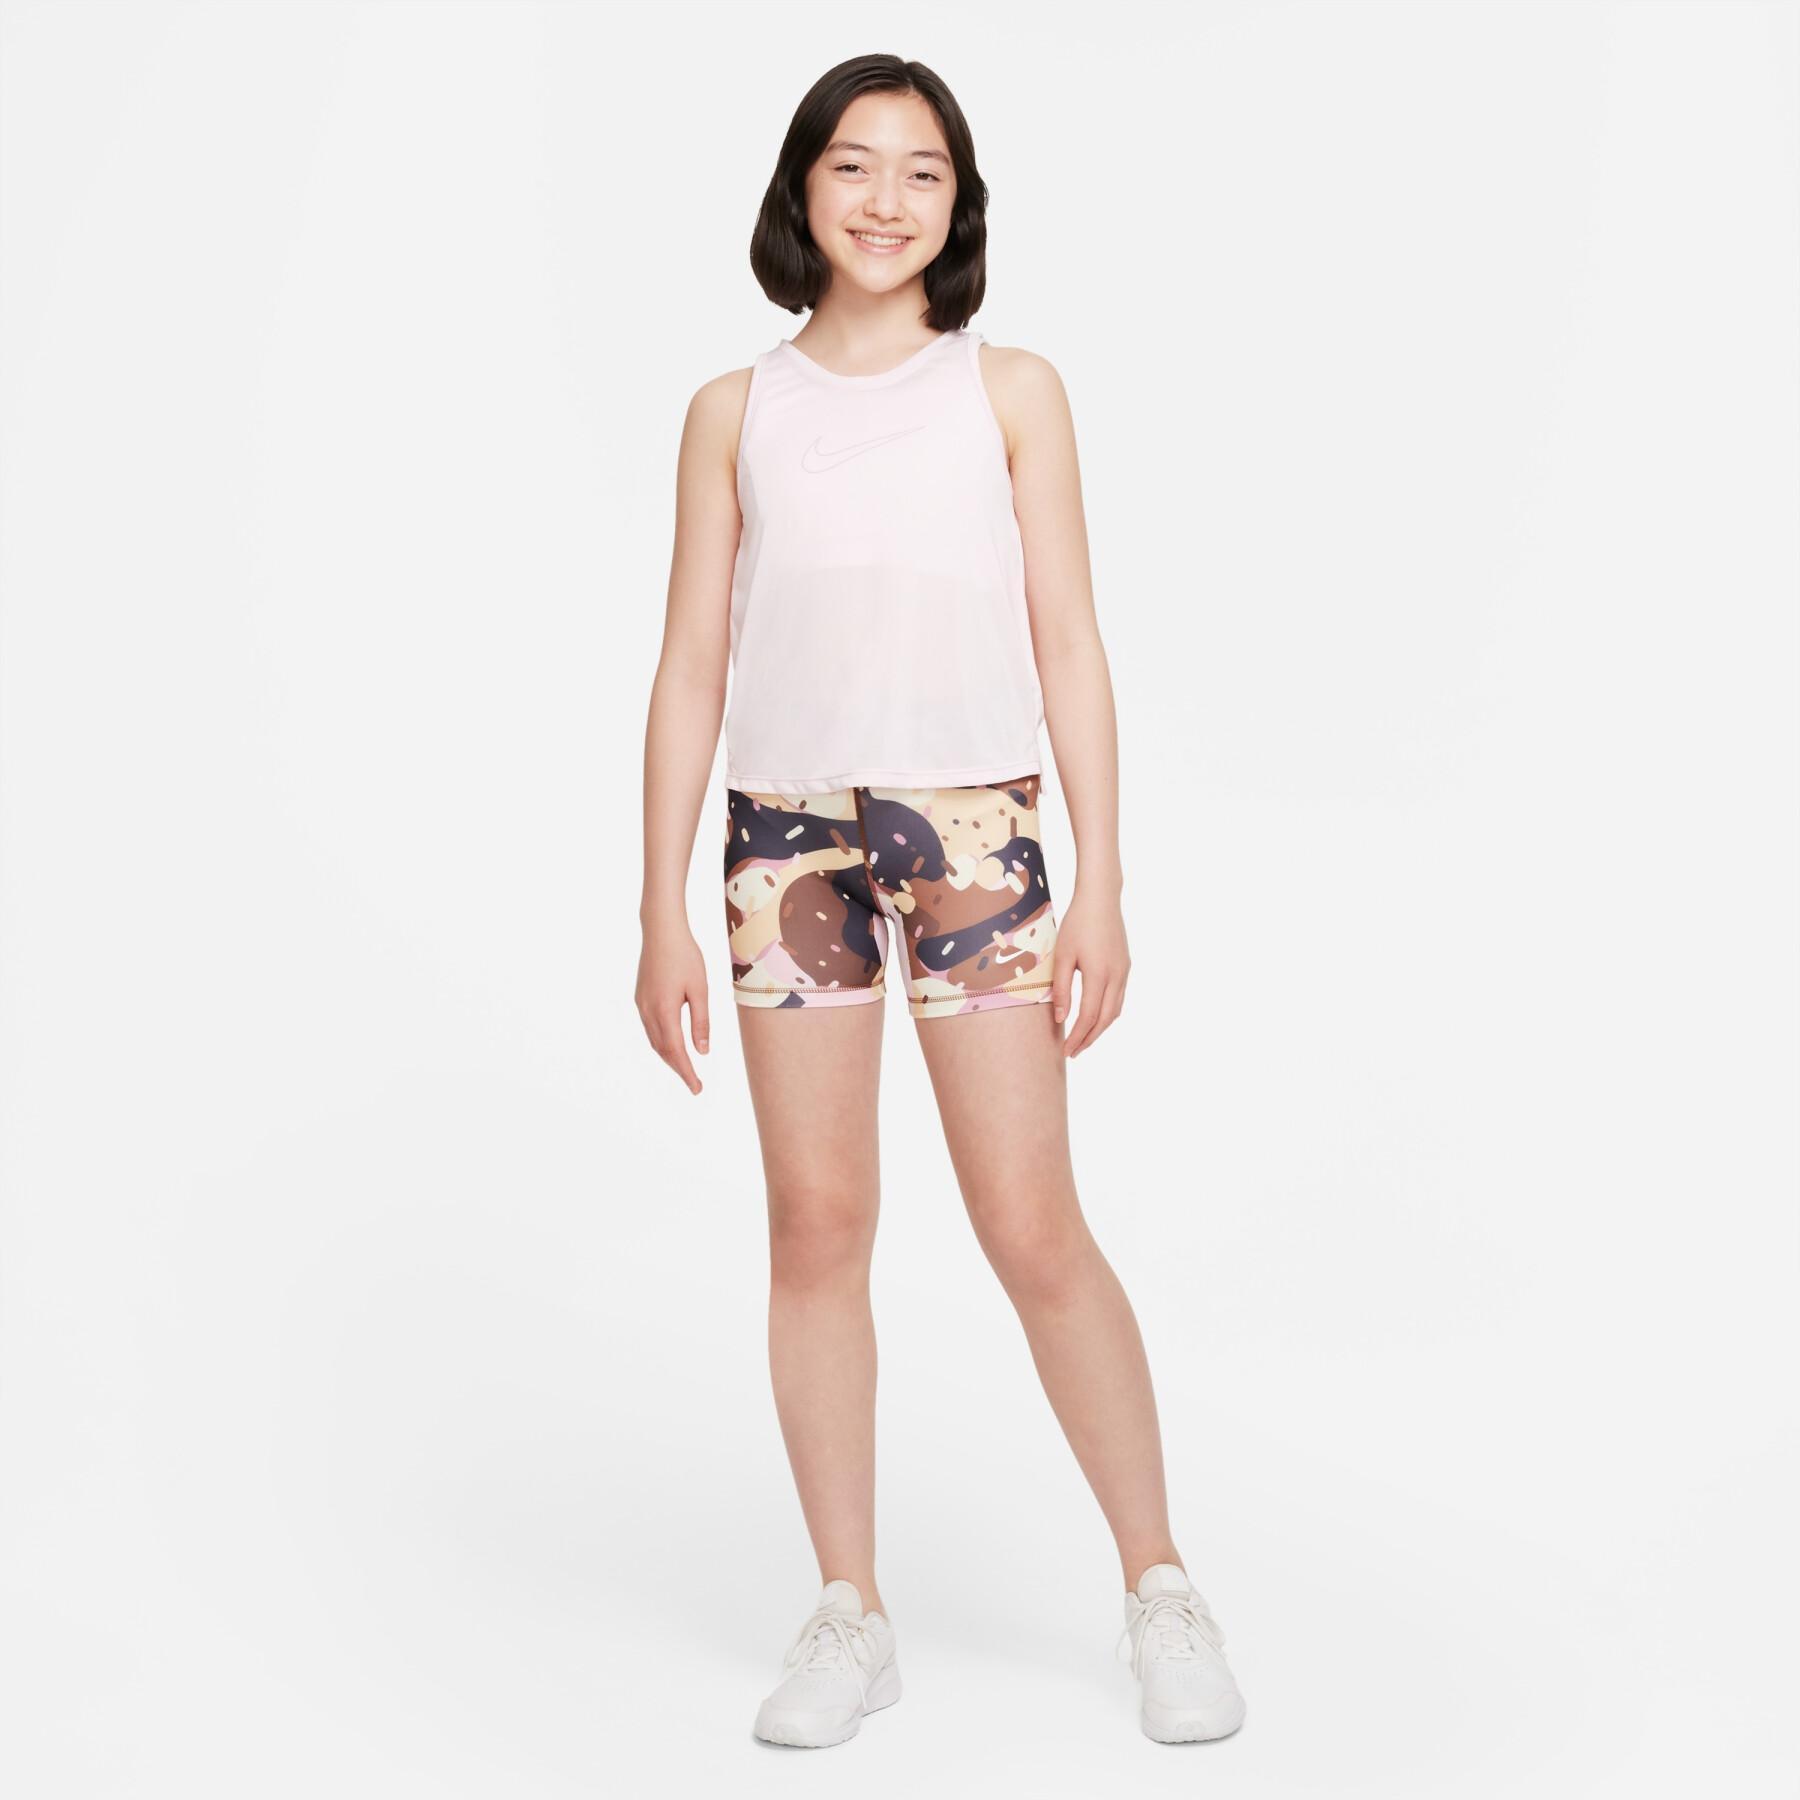 Shorts voor meisjes Nike Pro Dri-FIT